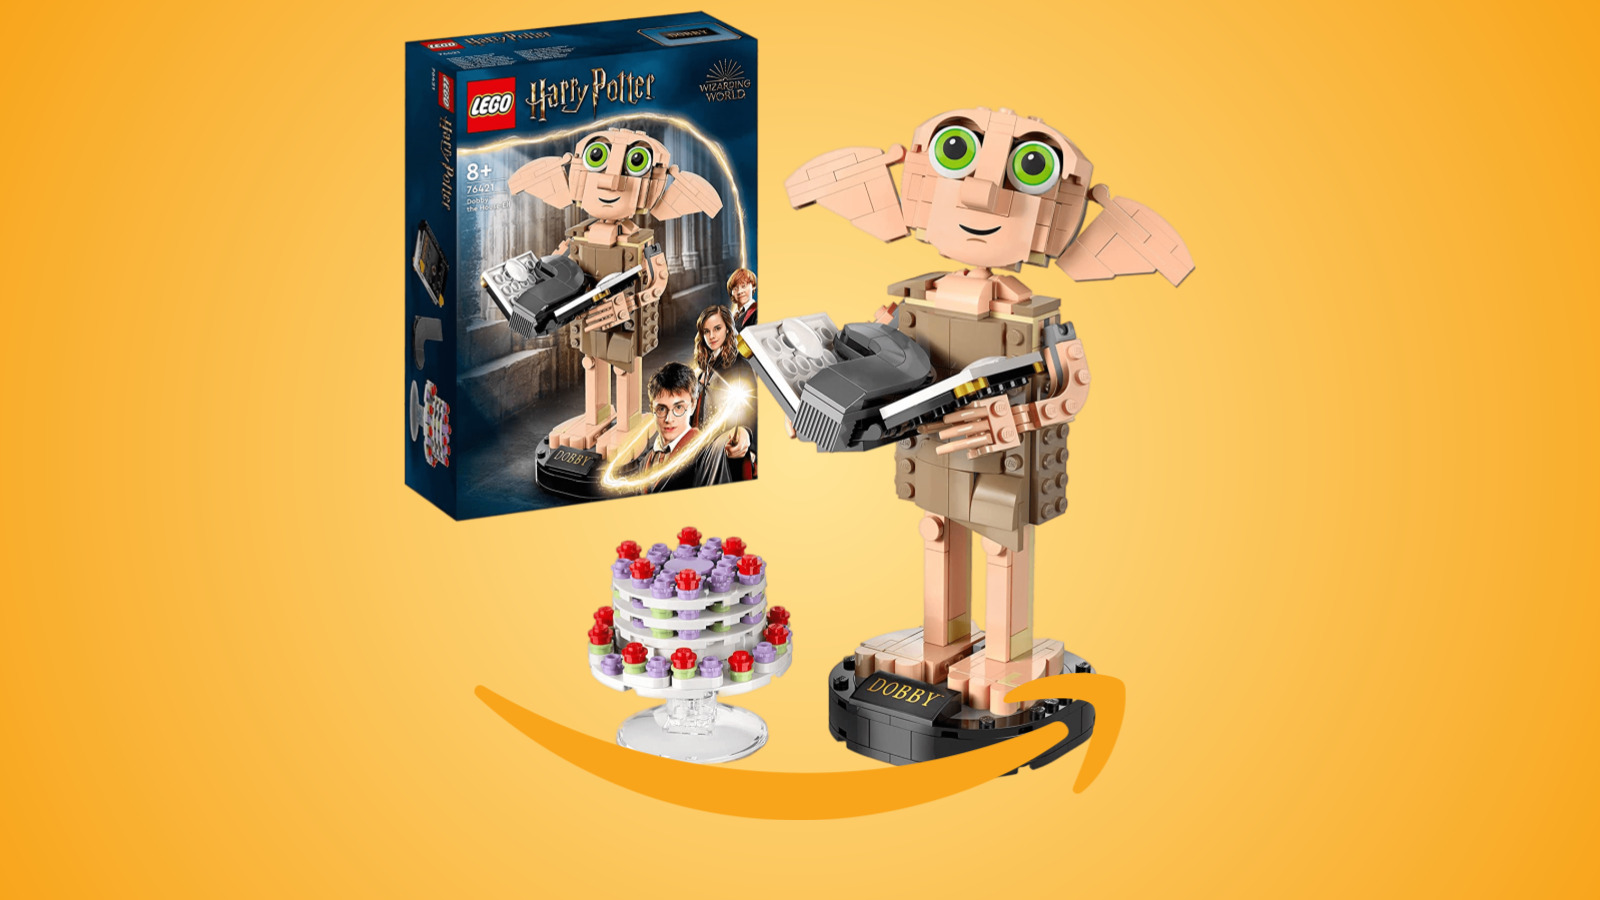 Harry Potter: il set LEGO di Dobby l’elfo è in offerta su Amazon